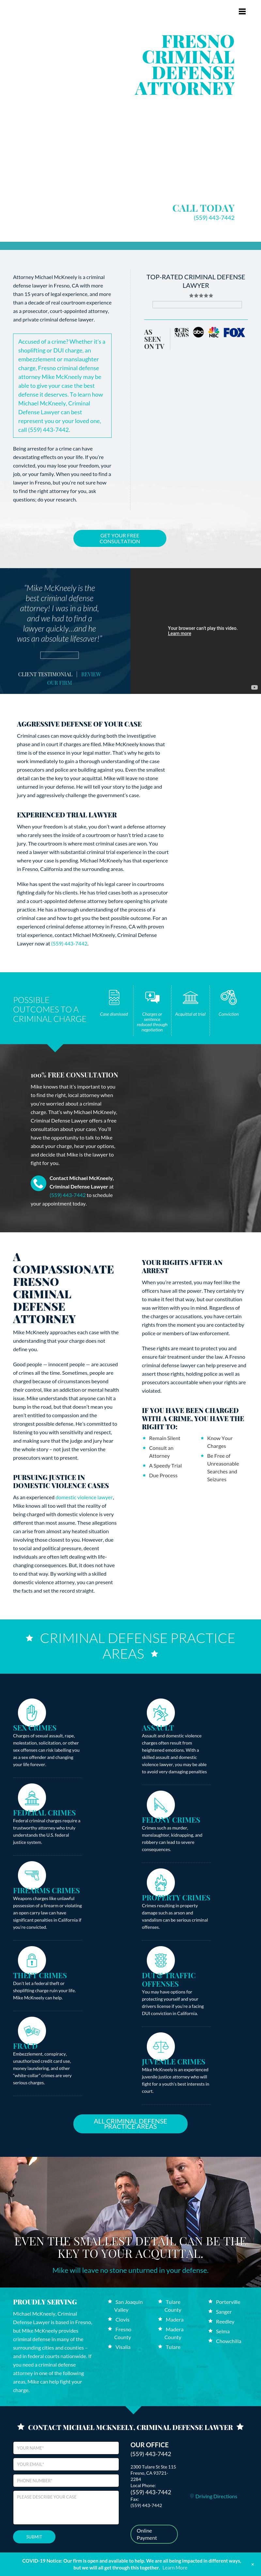 McKneely Law Firm - Fresno CA Lawyers